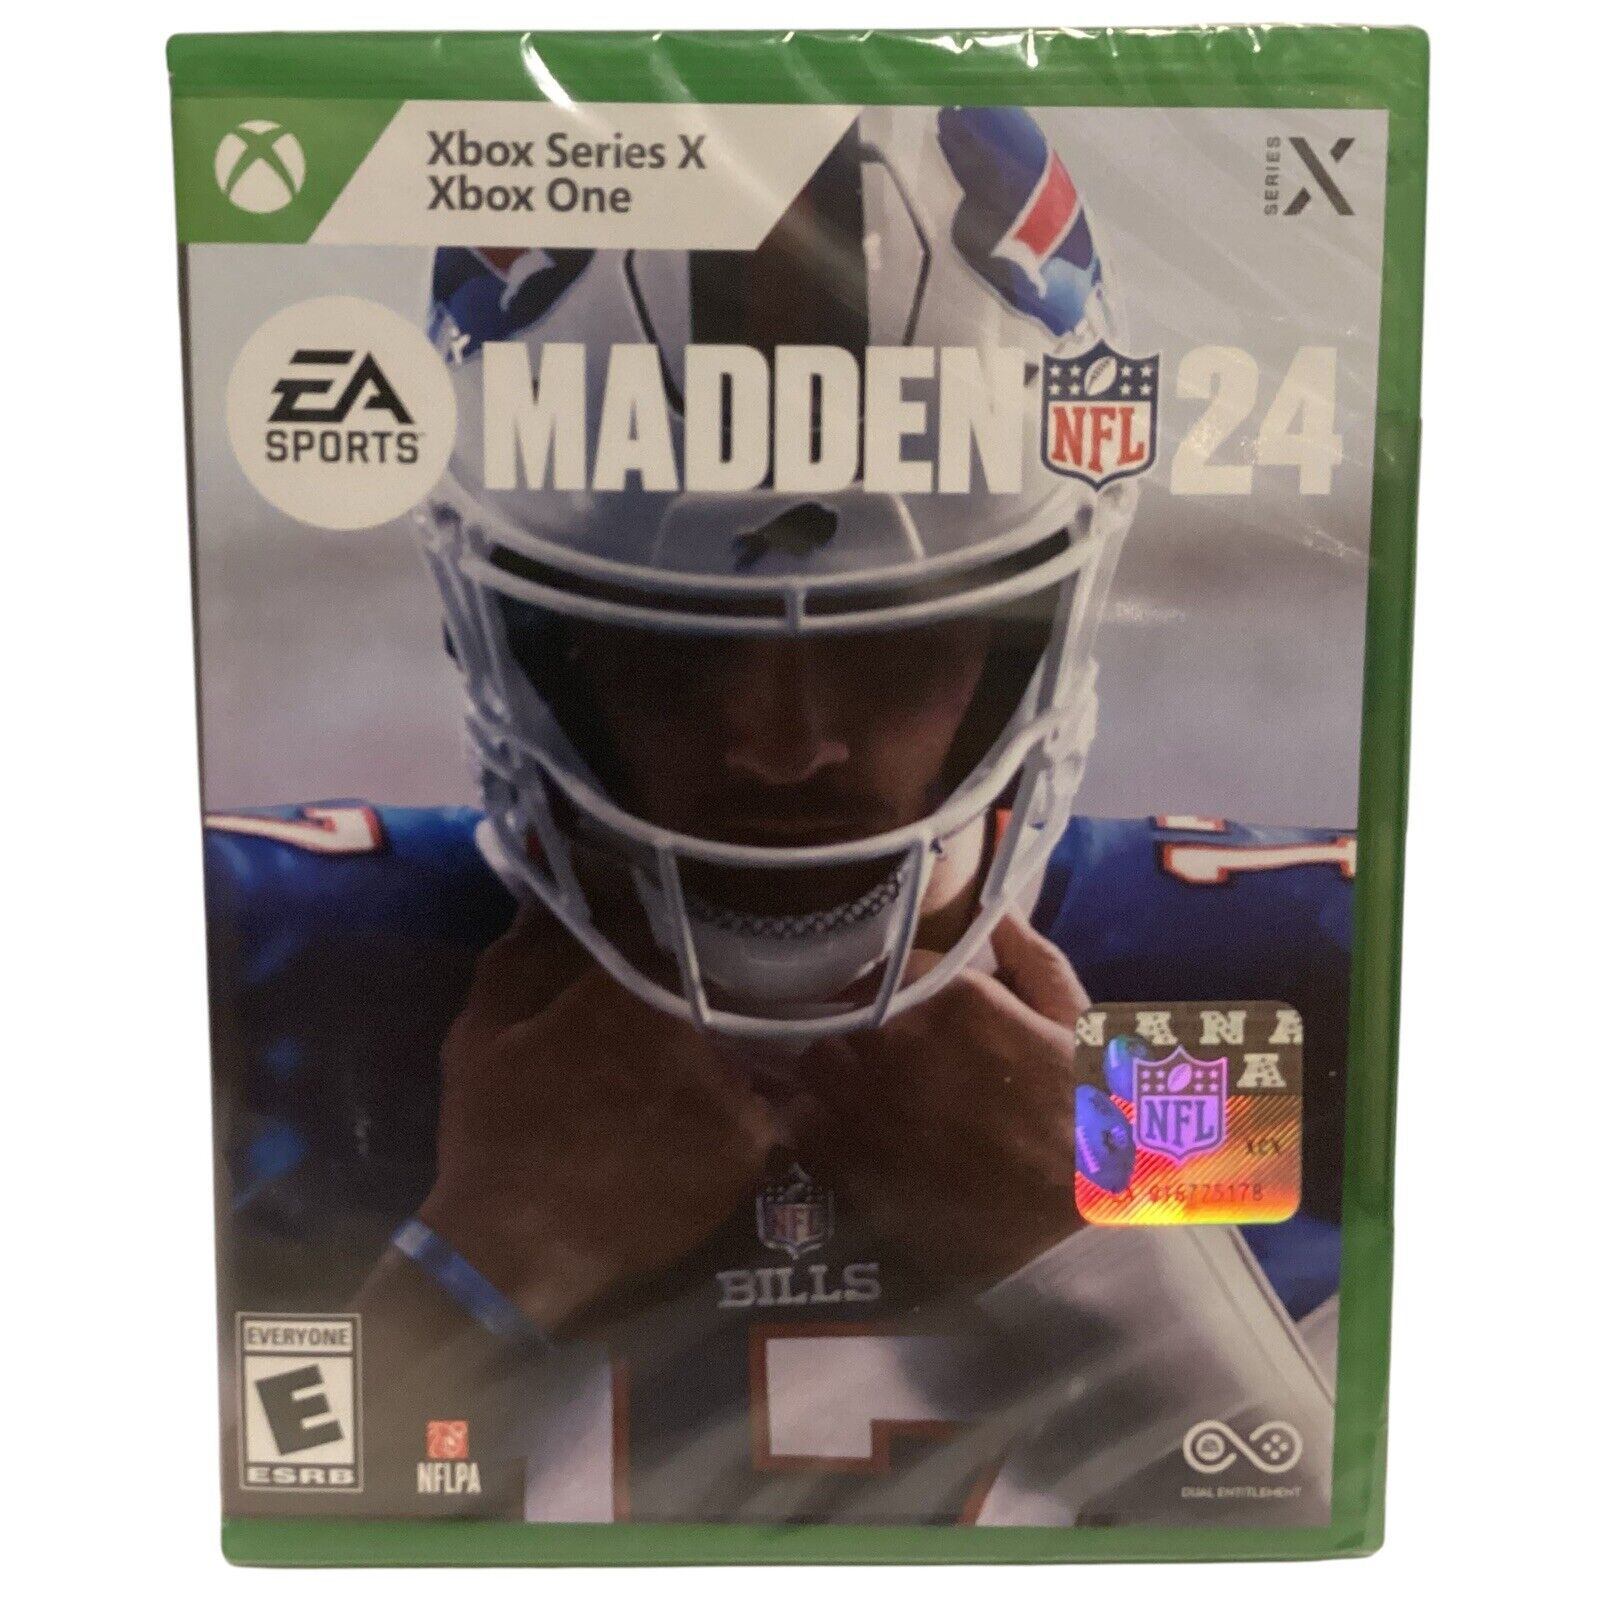 Astonishing Madden NFL 24 – Xbox Series X & Xbox One on eBay